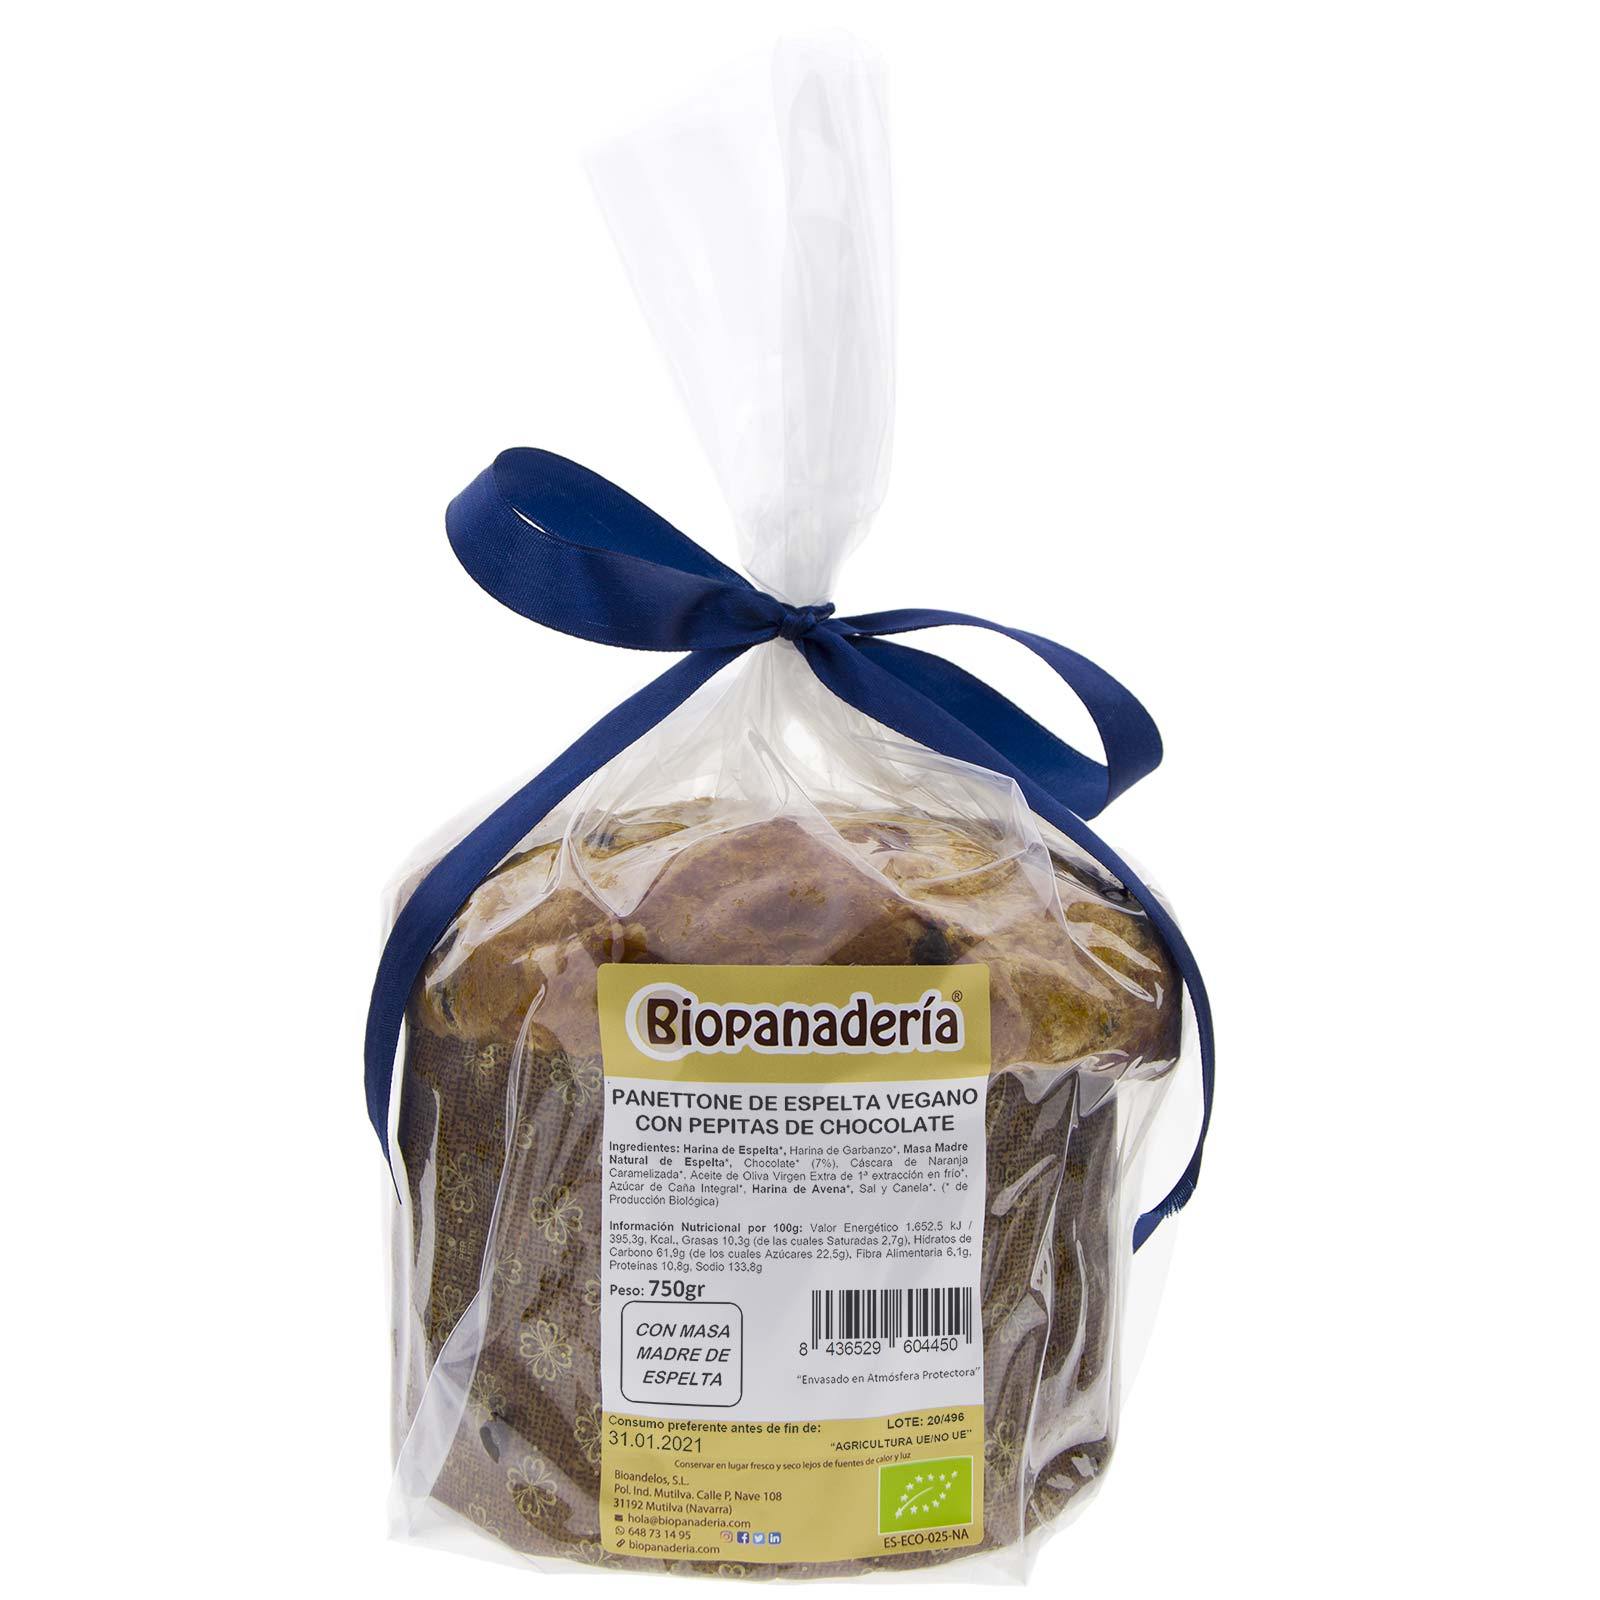 Panettone VEGANO de Espelta con Chocolate Ecológico 750g de Elaboración Artesanal - Biopanadería